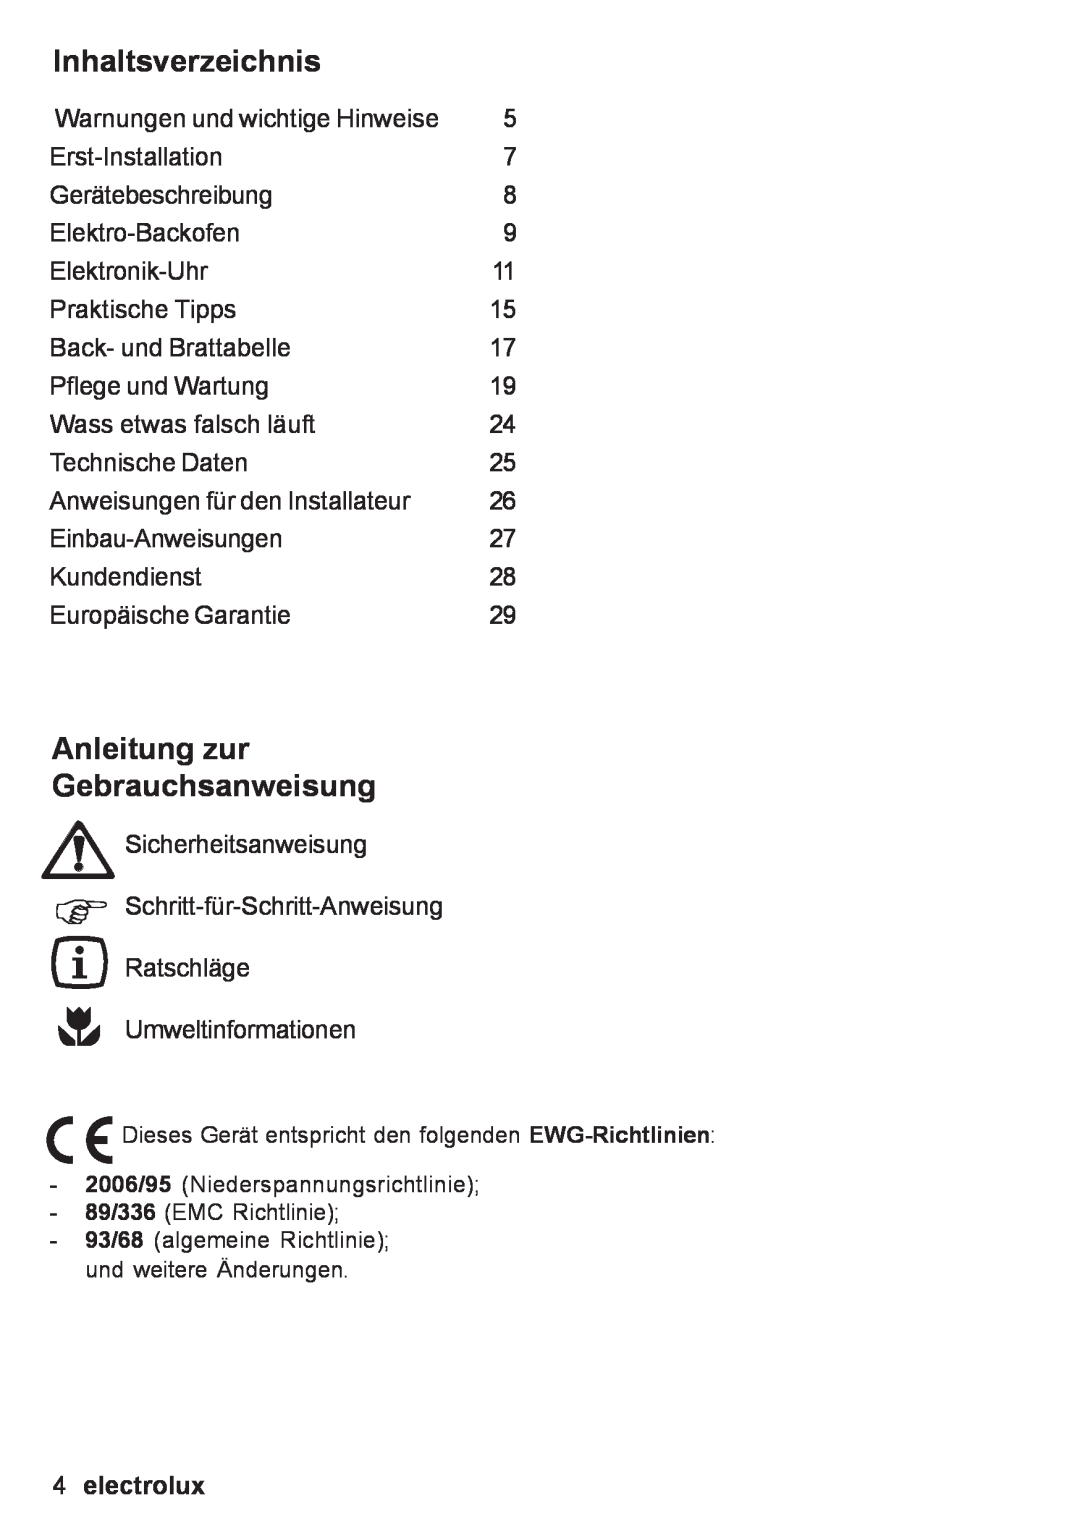 Electrolux EOB 53003 user manual Inhaltsverzeichnis, Anleitung zur Gebrauchsanweisung, electrolux 